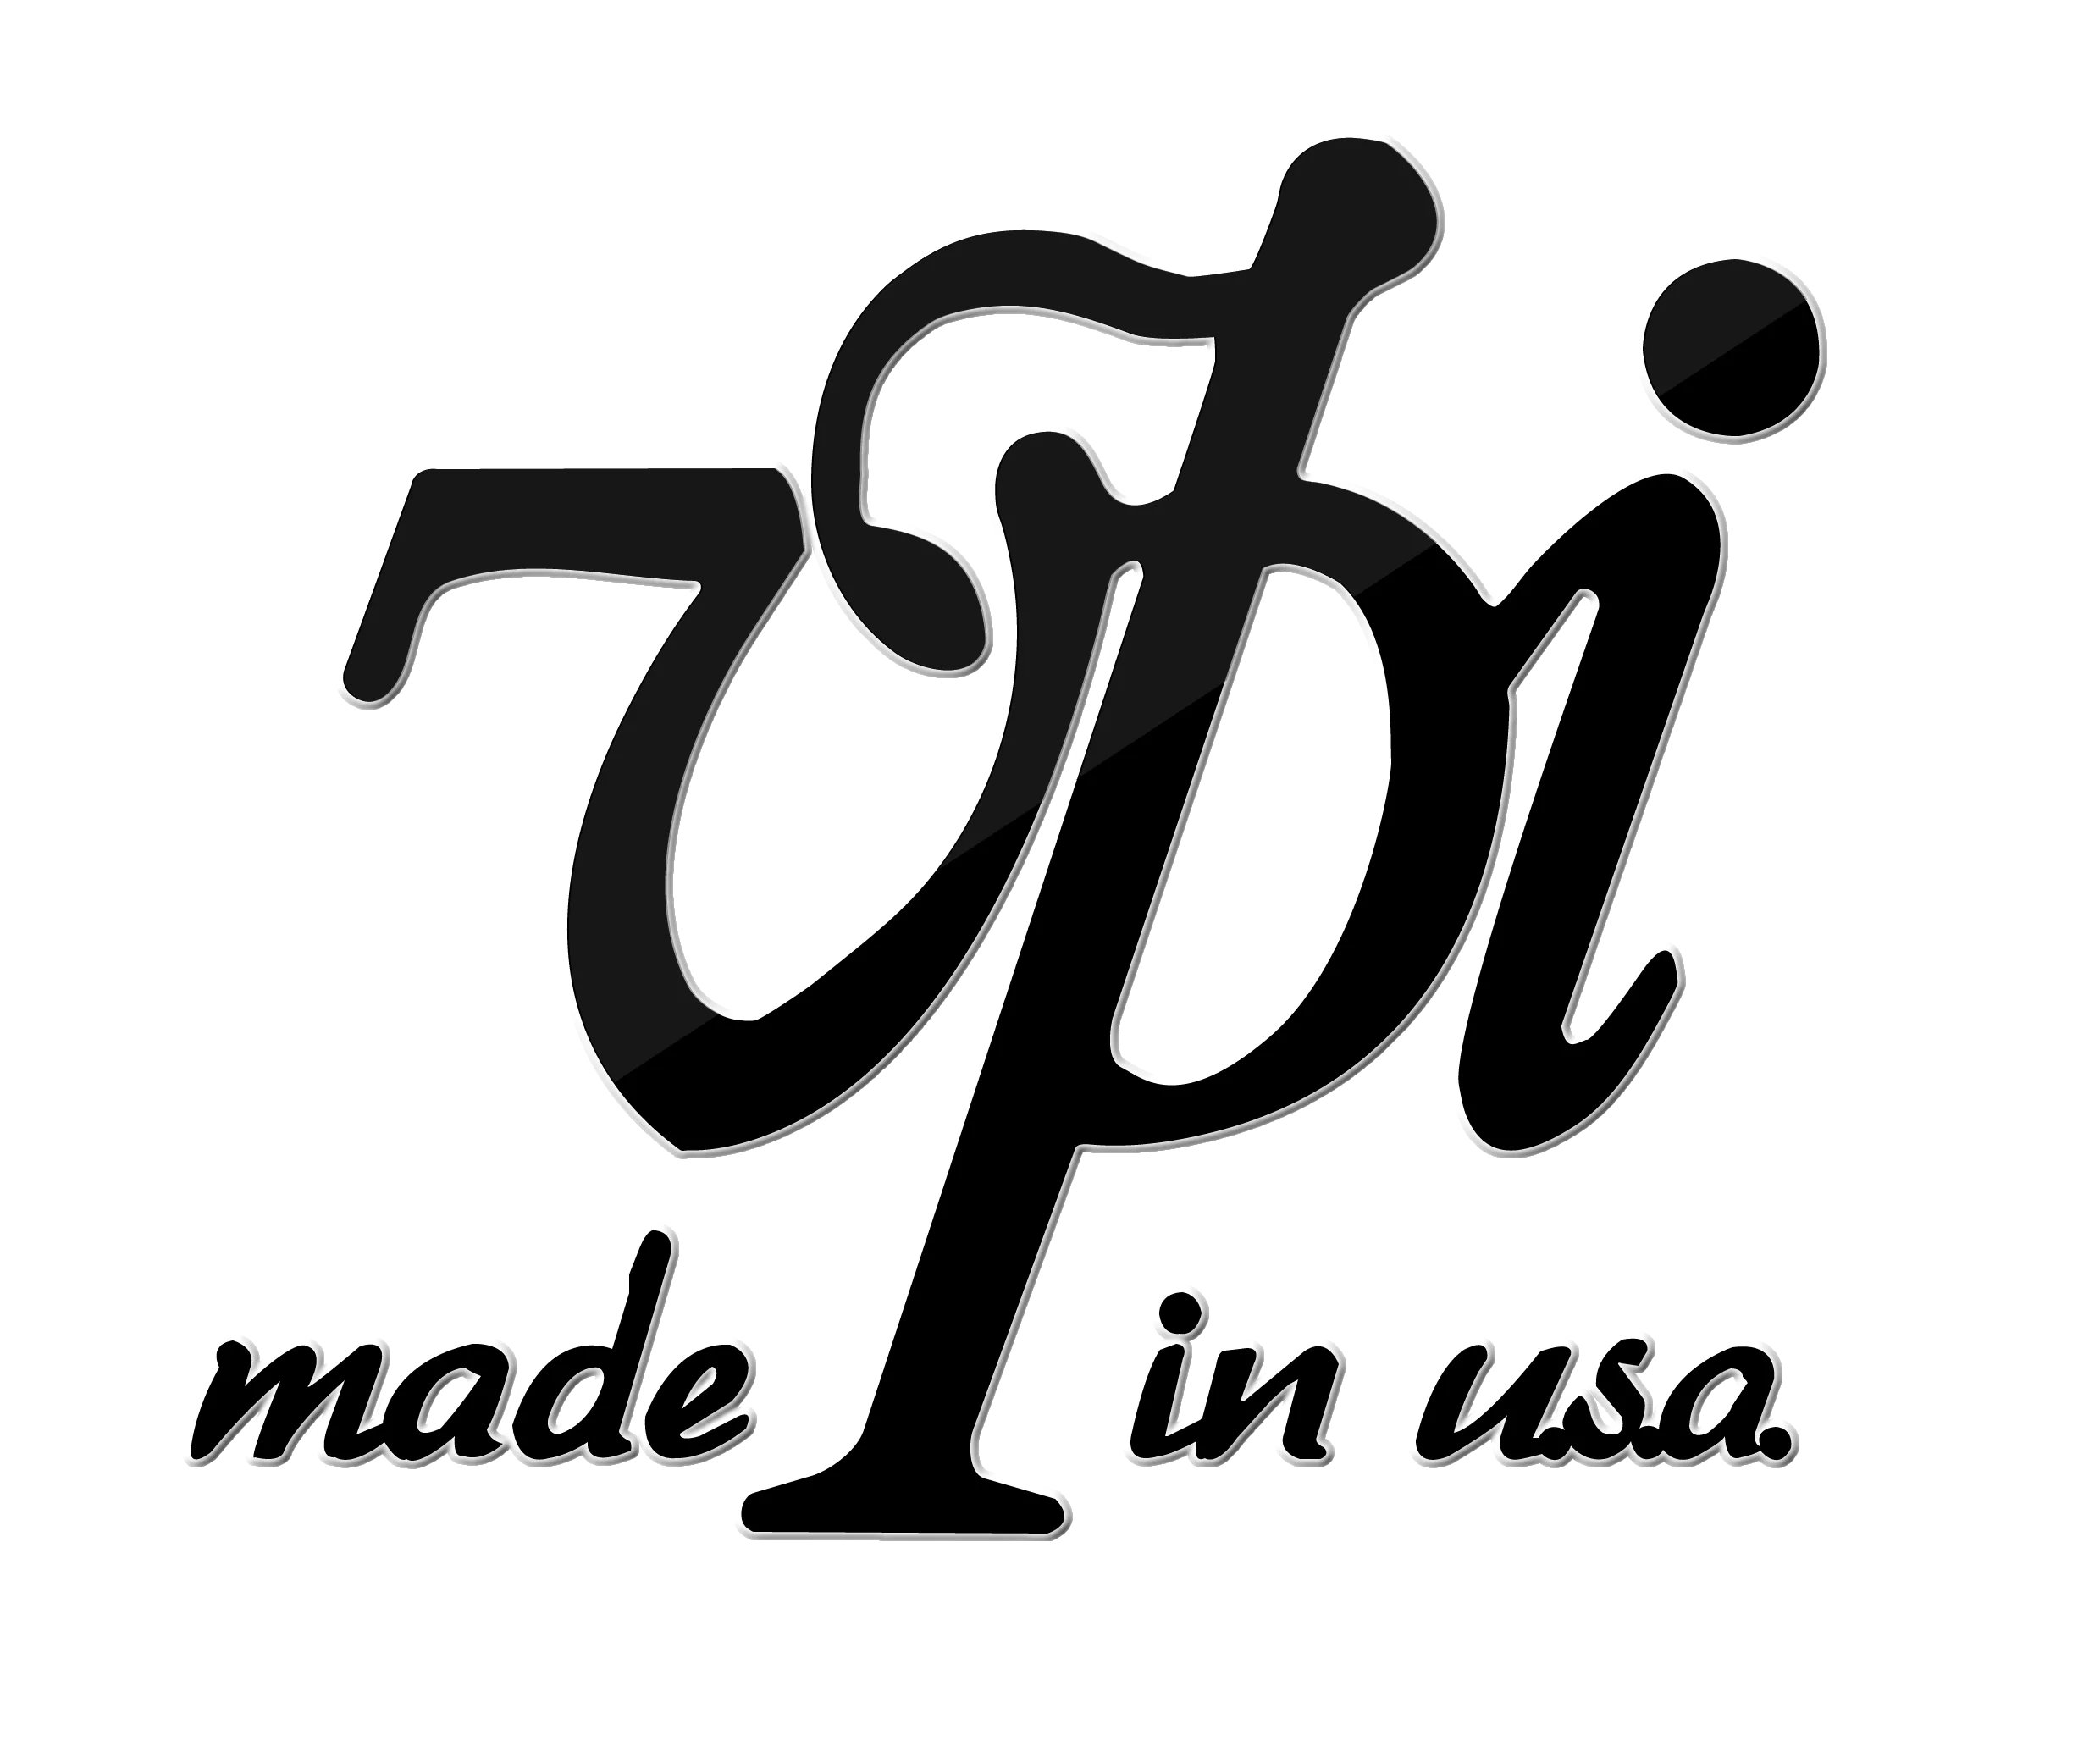 VPI Logo